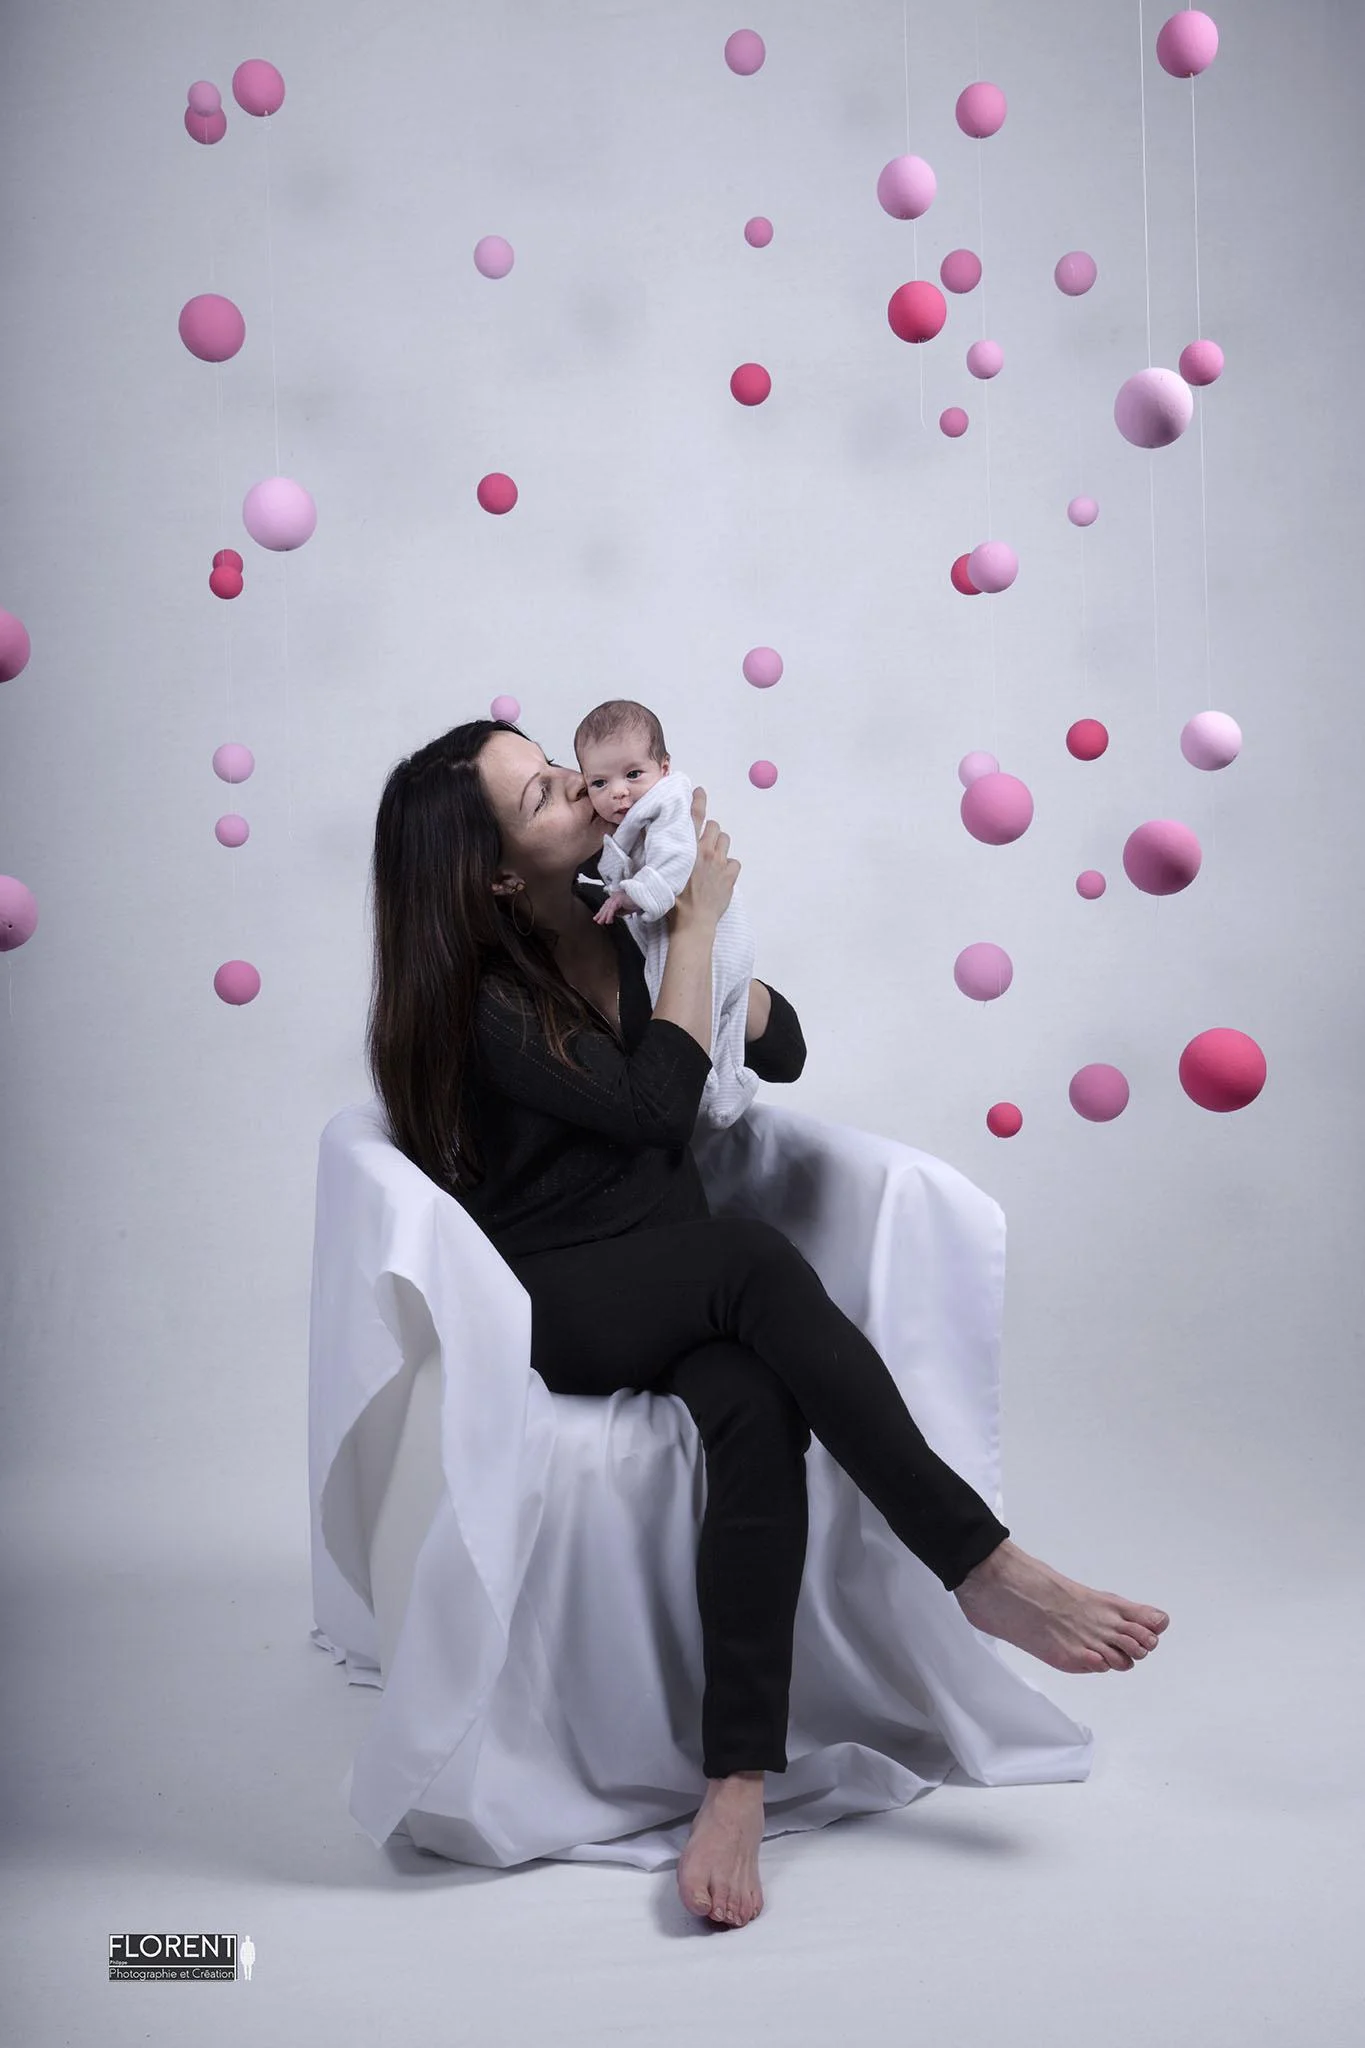 photographe bebe tendresse boulogne sur mer lille paris florent studio